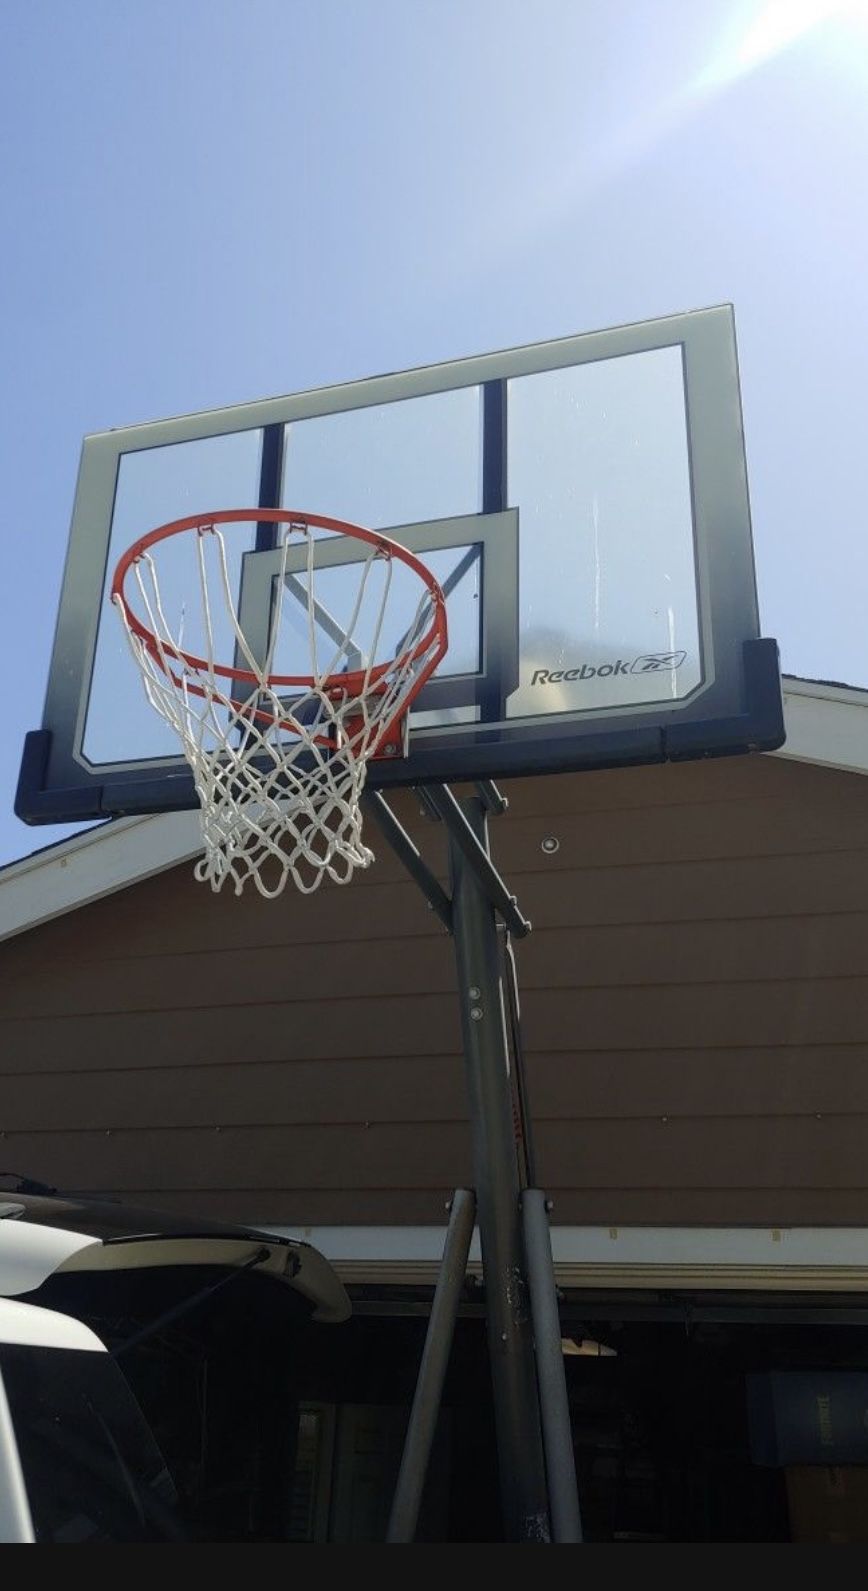 Proverbio Convención efecto Reebok Basketball Court for Sale in Los Angeles, CA - OfferUp